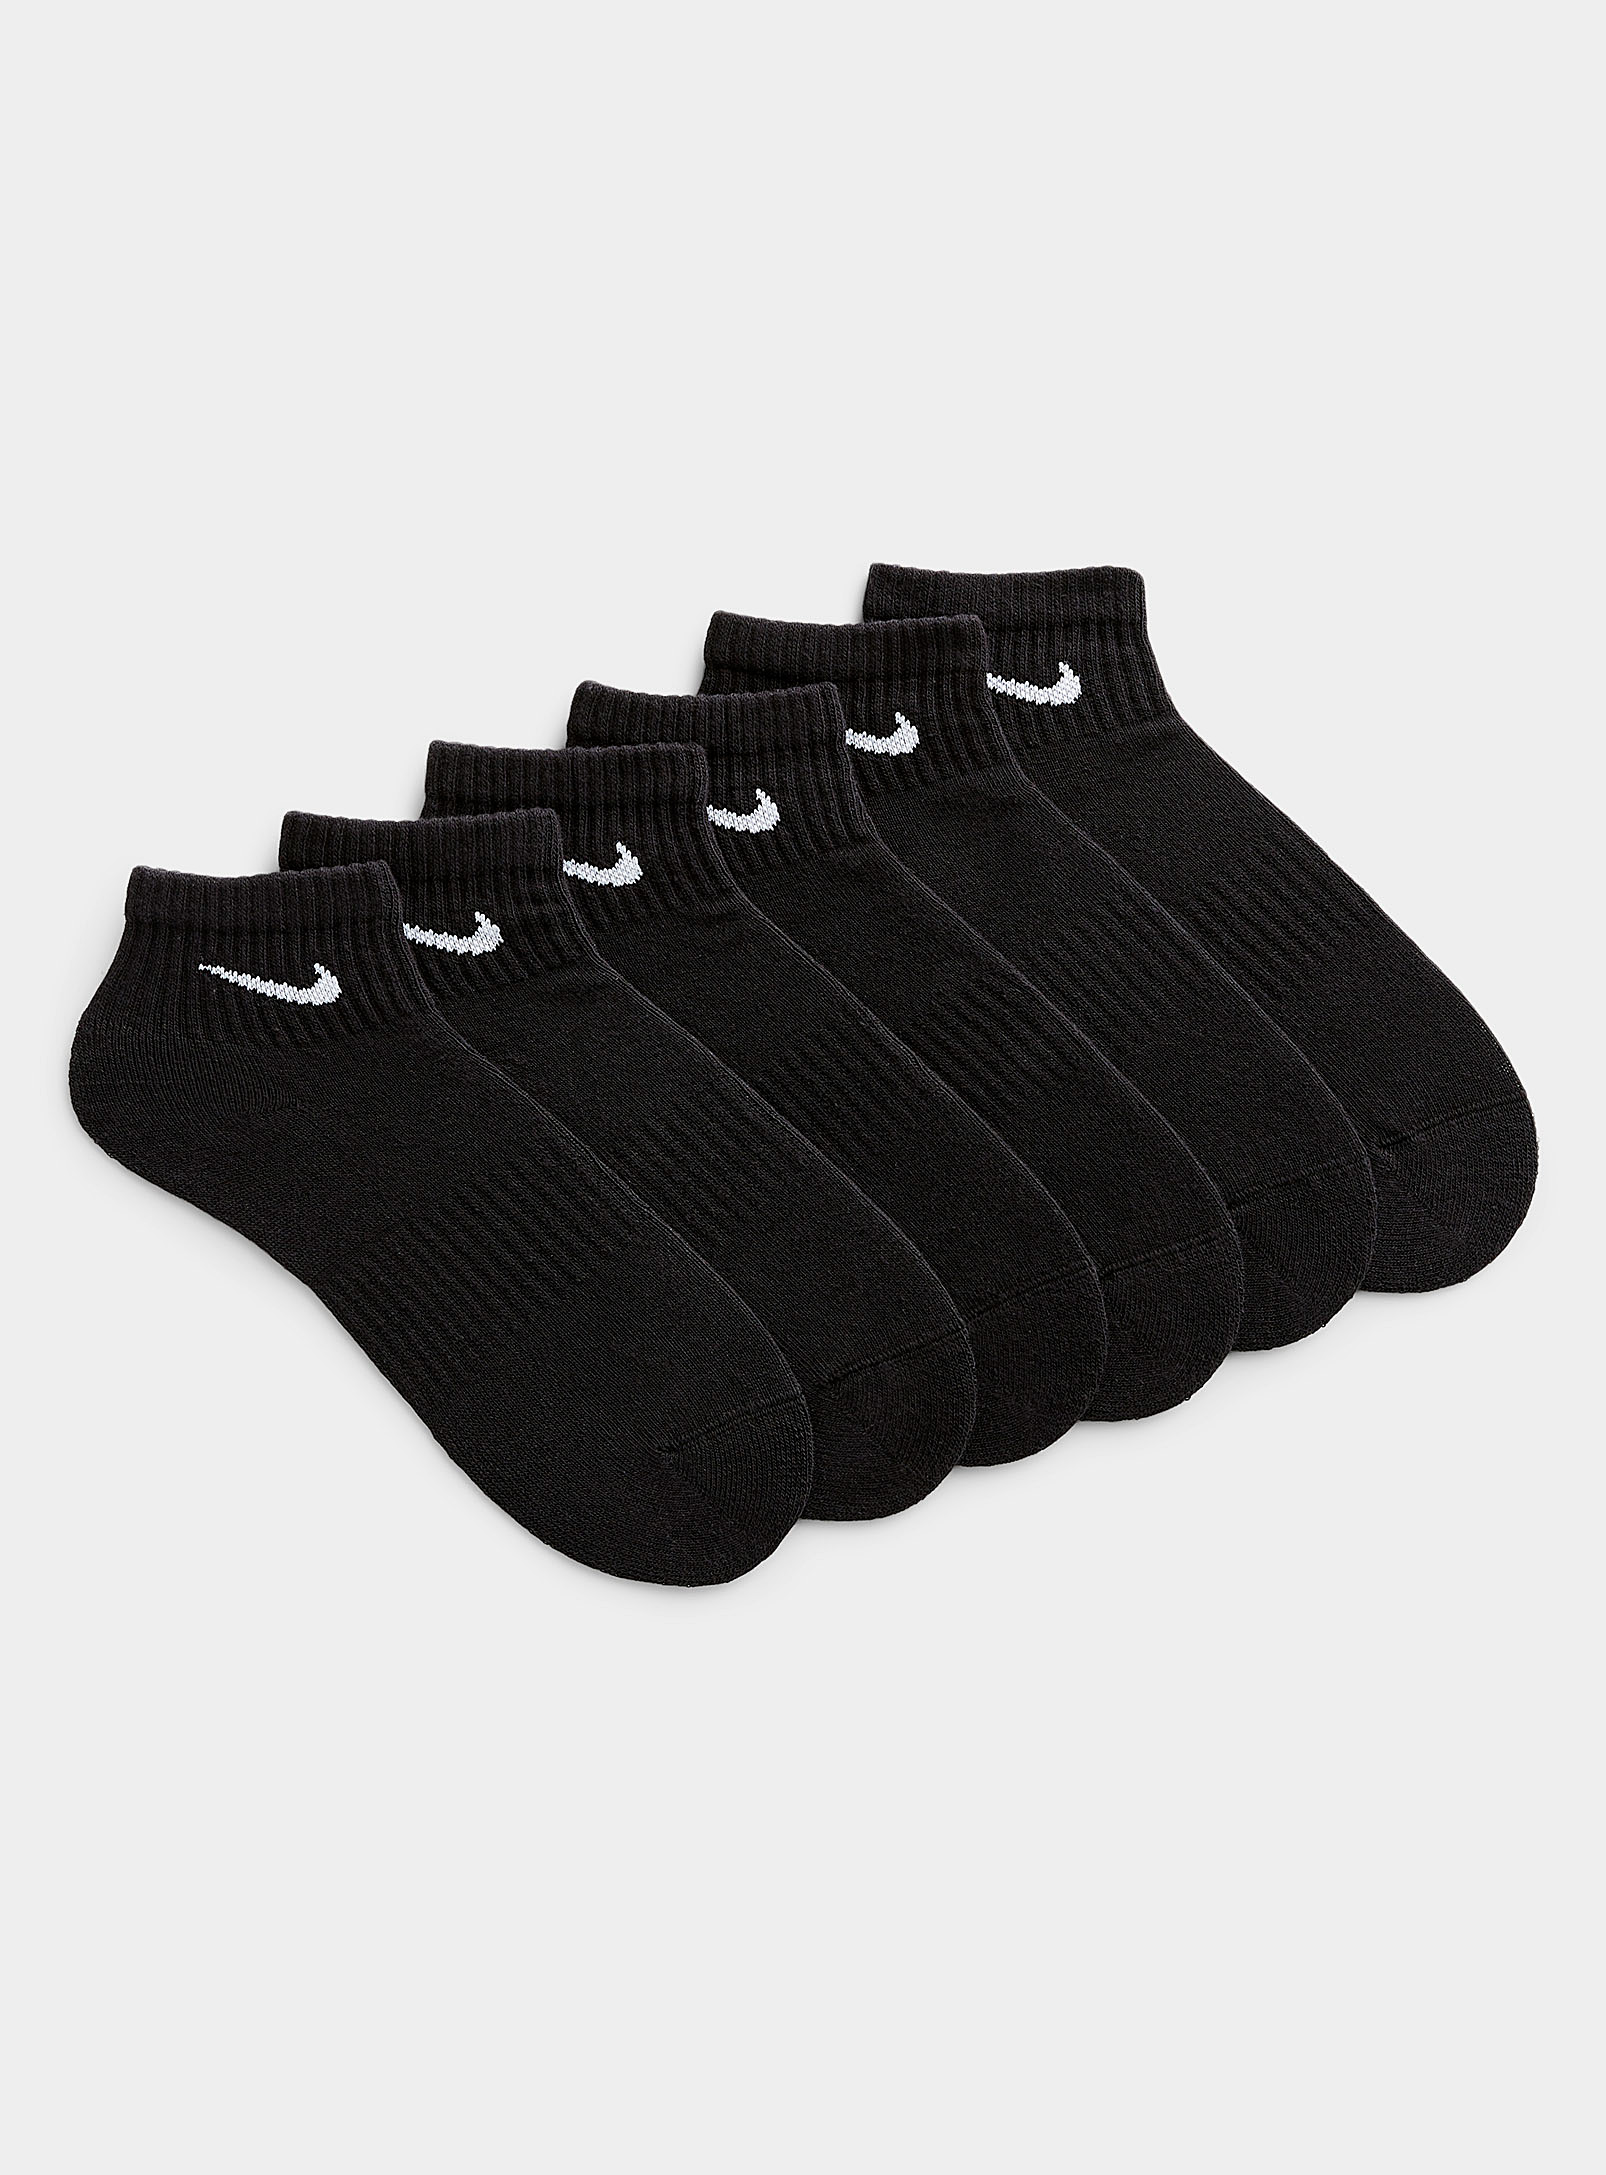 Nike - Men's Everyday ankle socks 6-pack